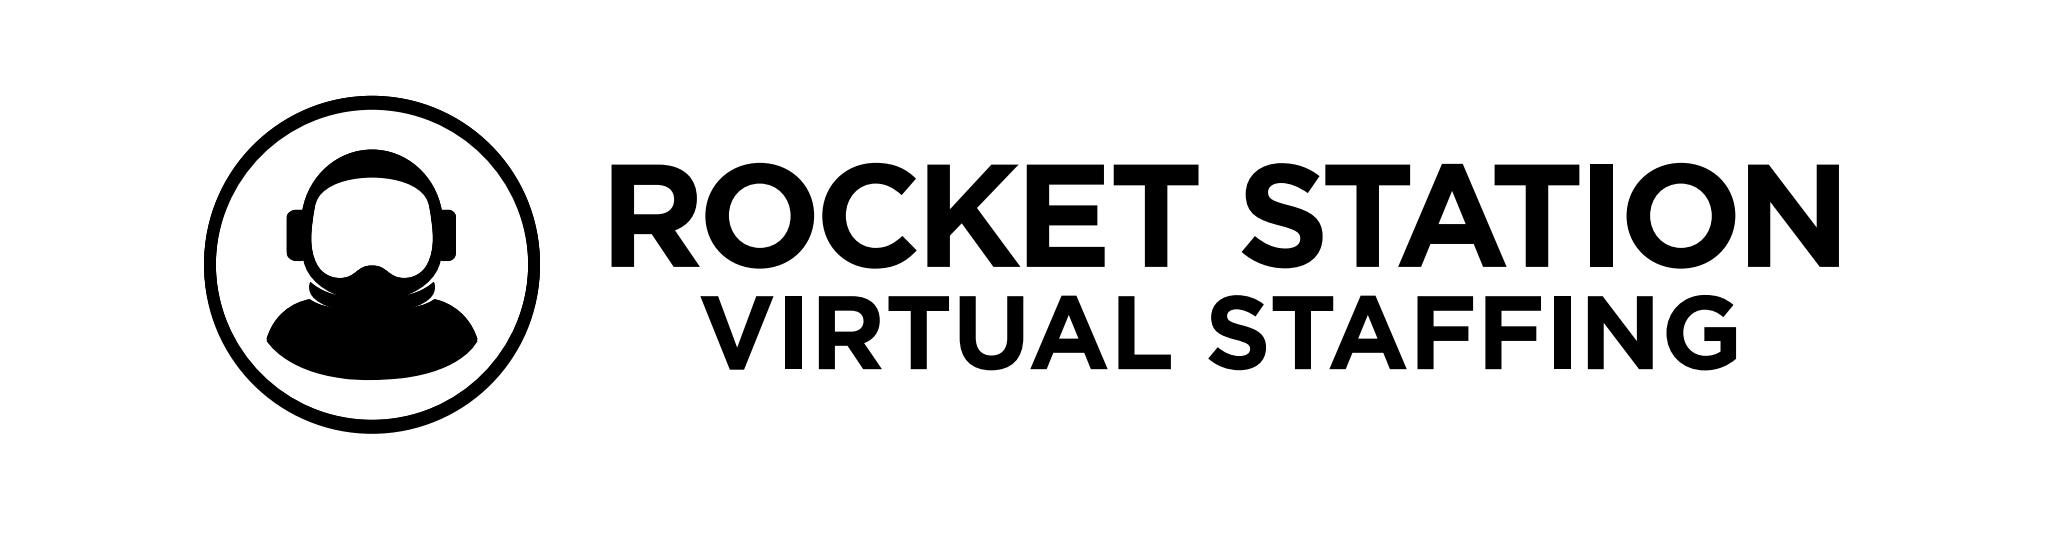 Rocket Station Virtual Staffing logo